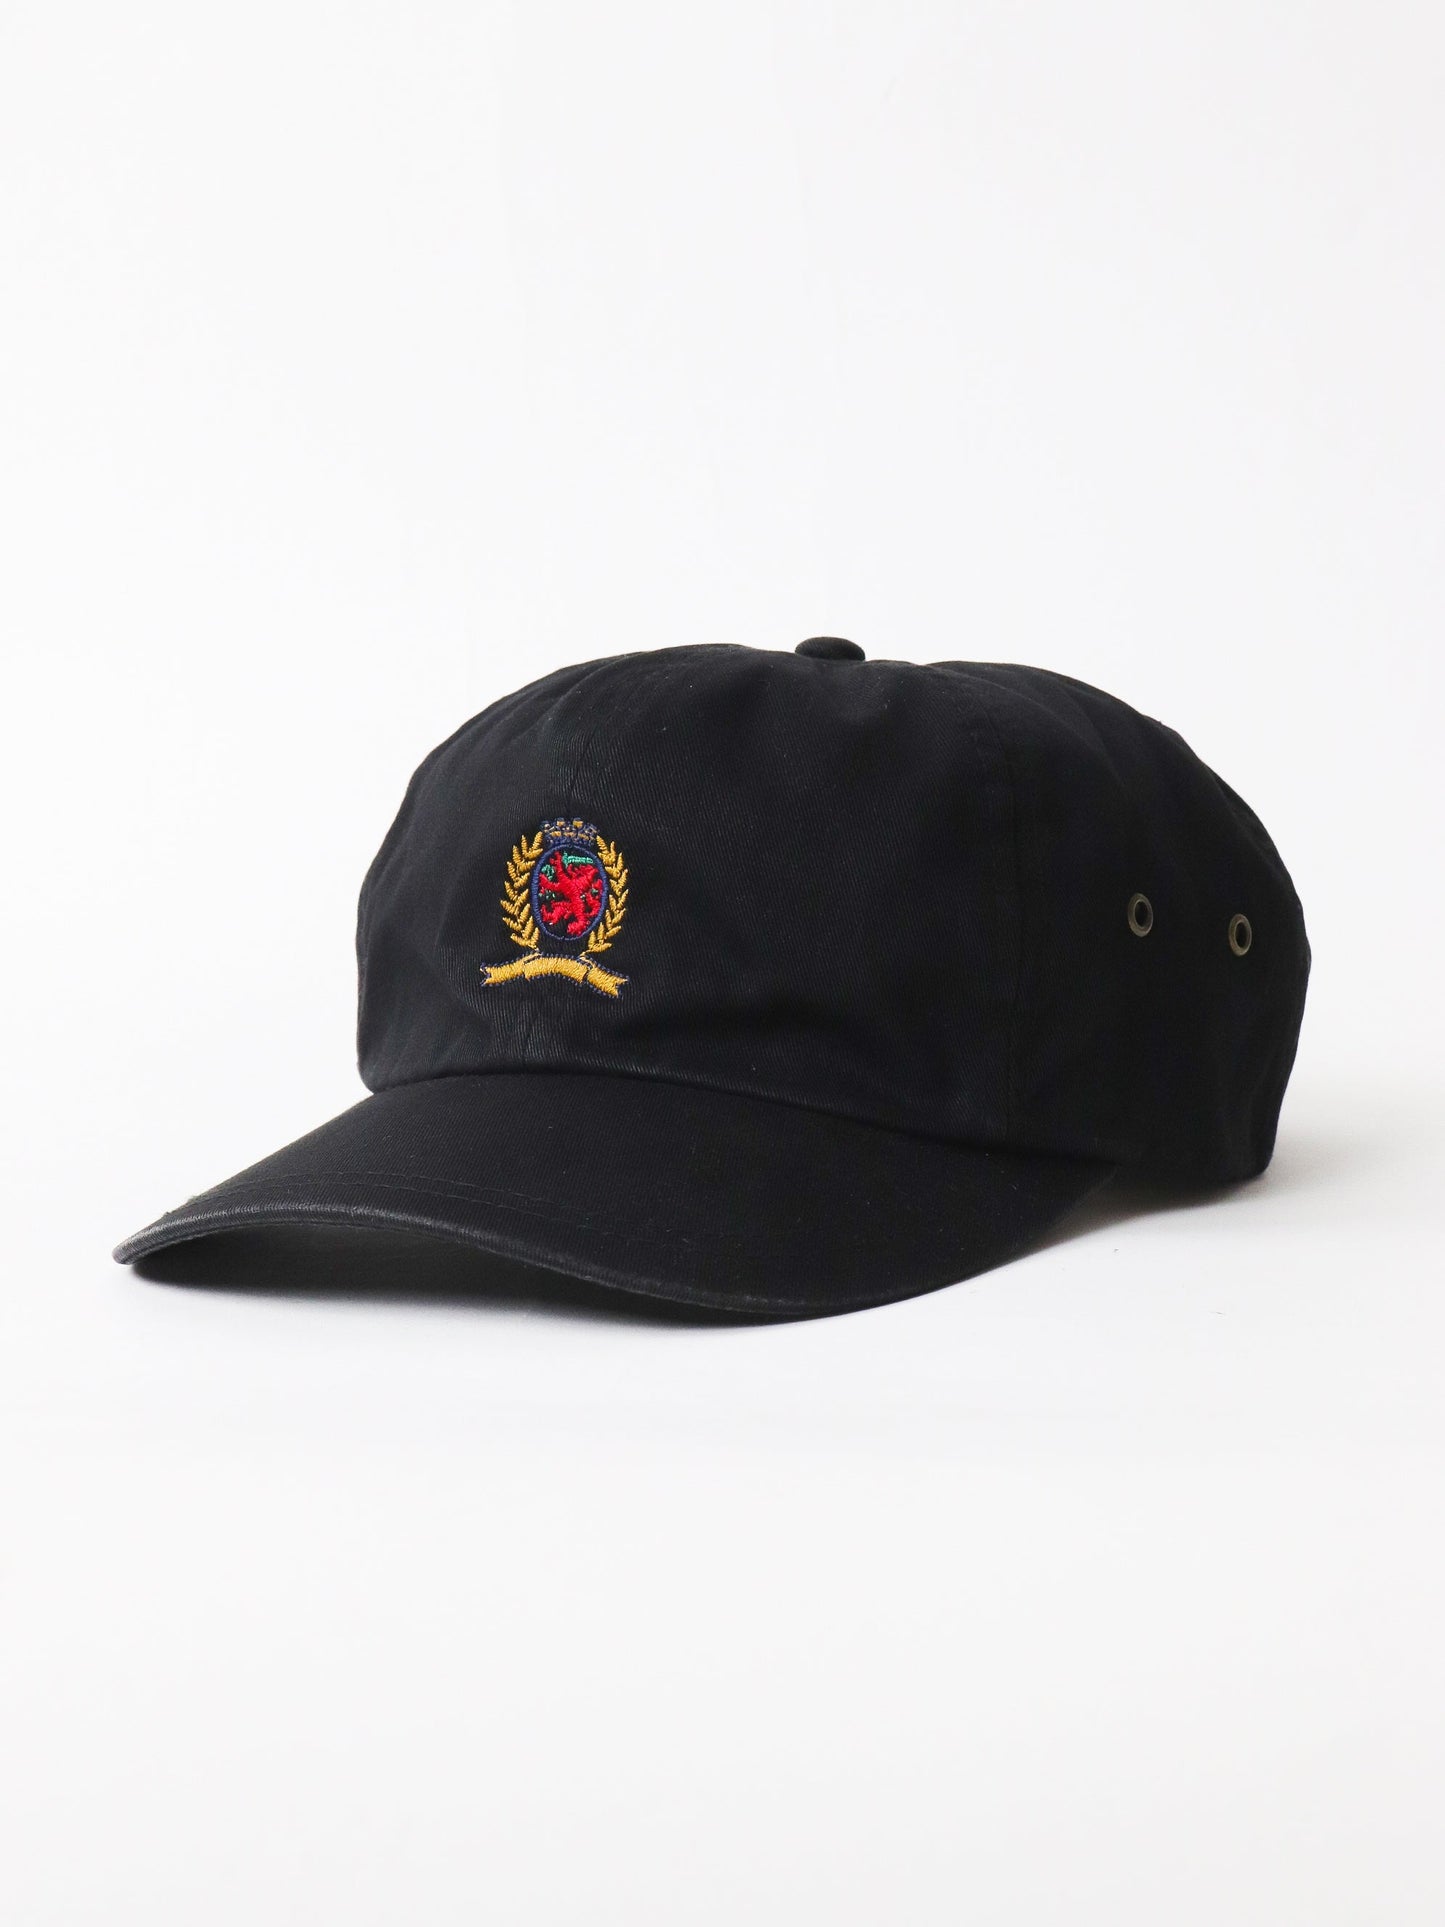 Tommy Hilfiger Hats & Beanies Vintage Tommy Hilfiger Hat Cap Adult Black Strap Back